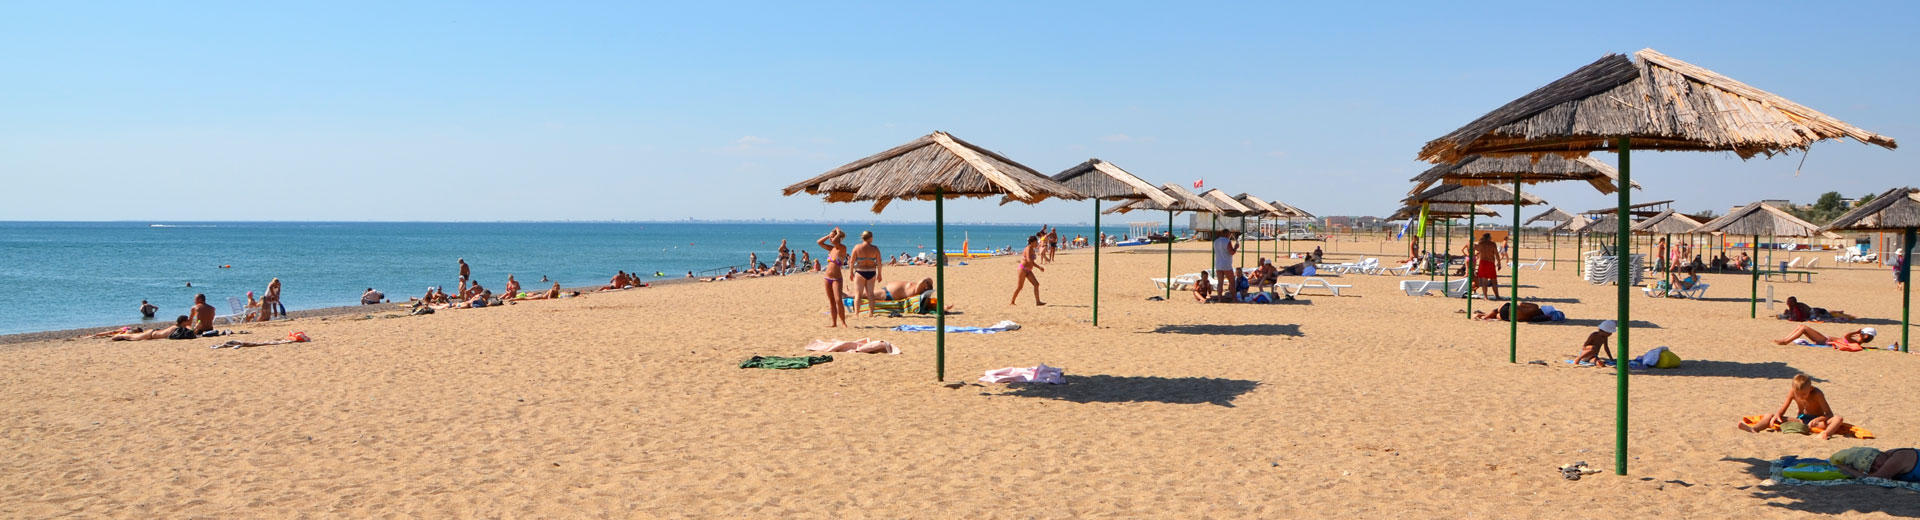 Песчаный пляж в Саках в Крыму